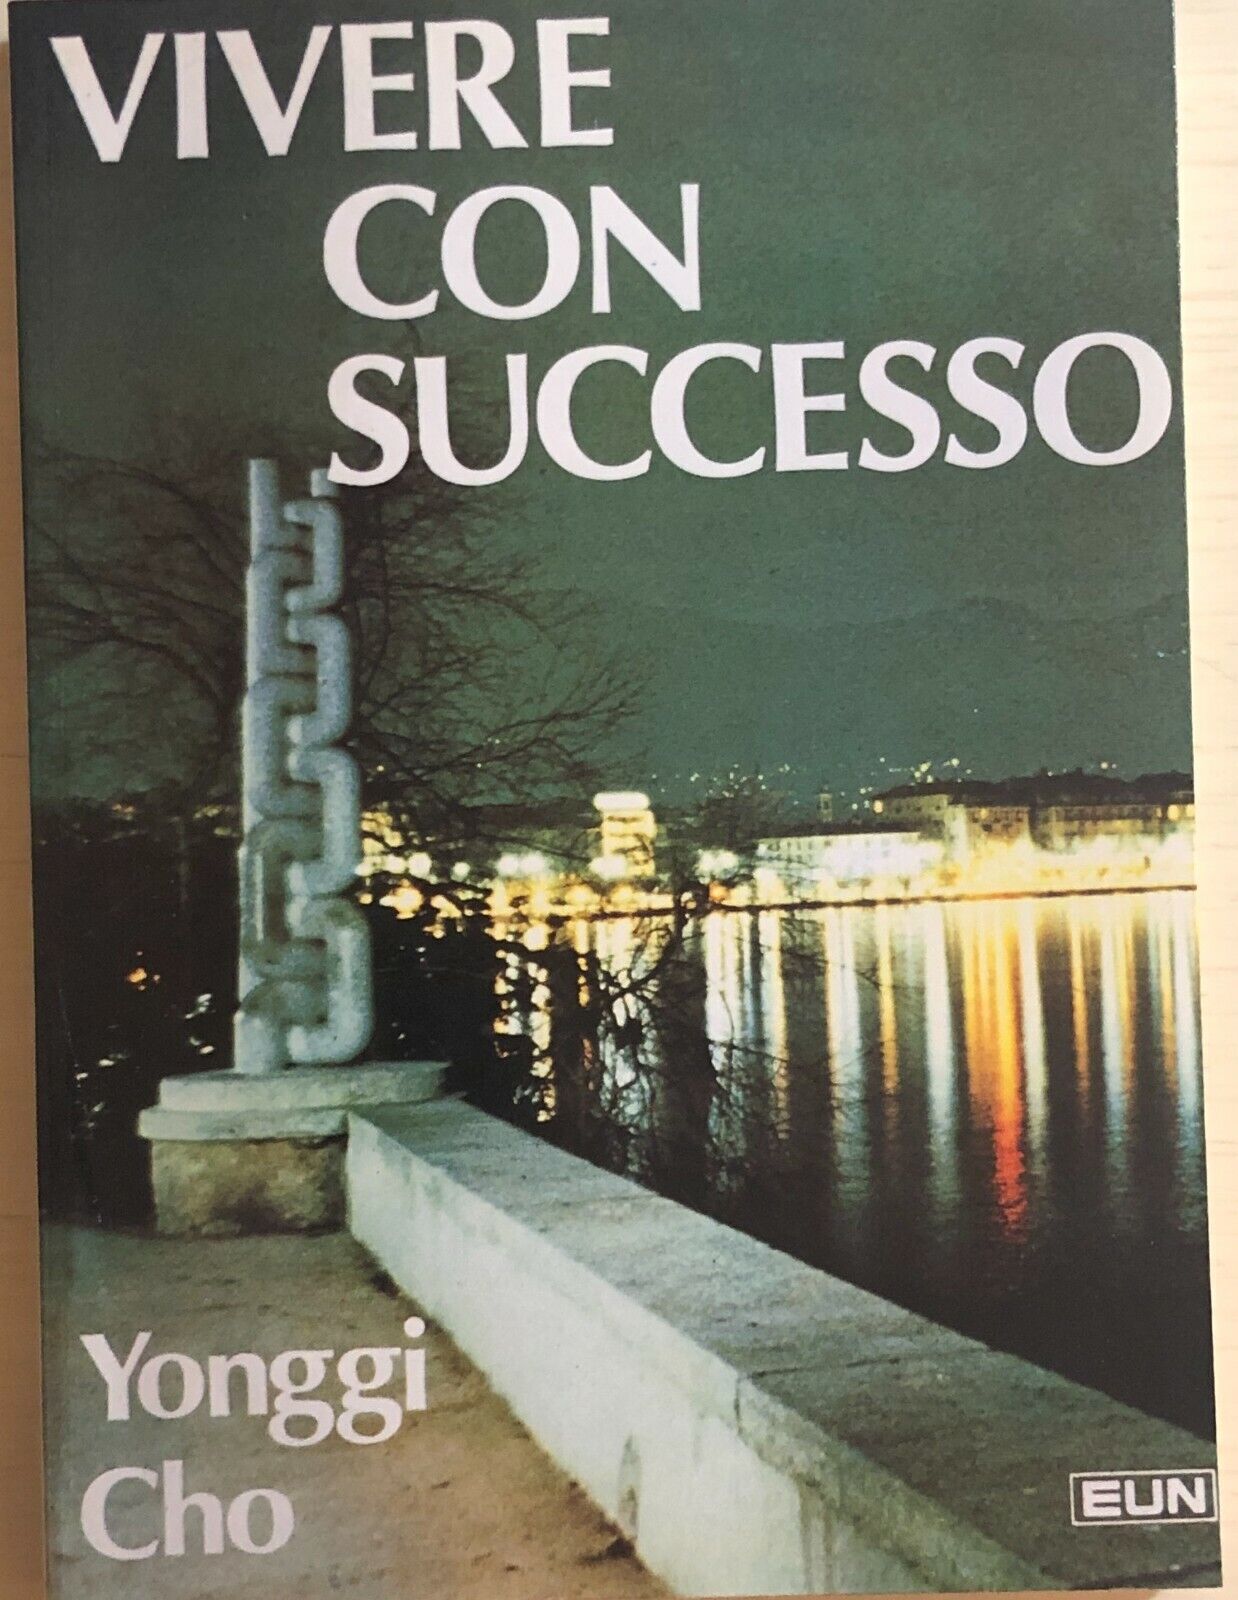 Vivere con successo di Yonggi Cho, 1979, EUN